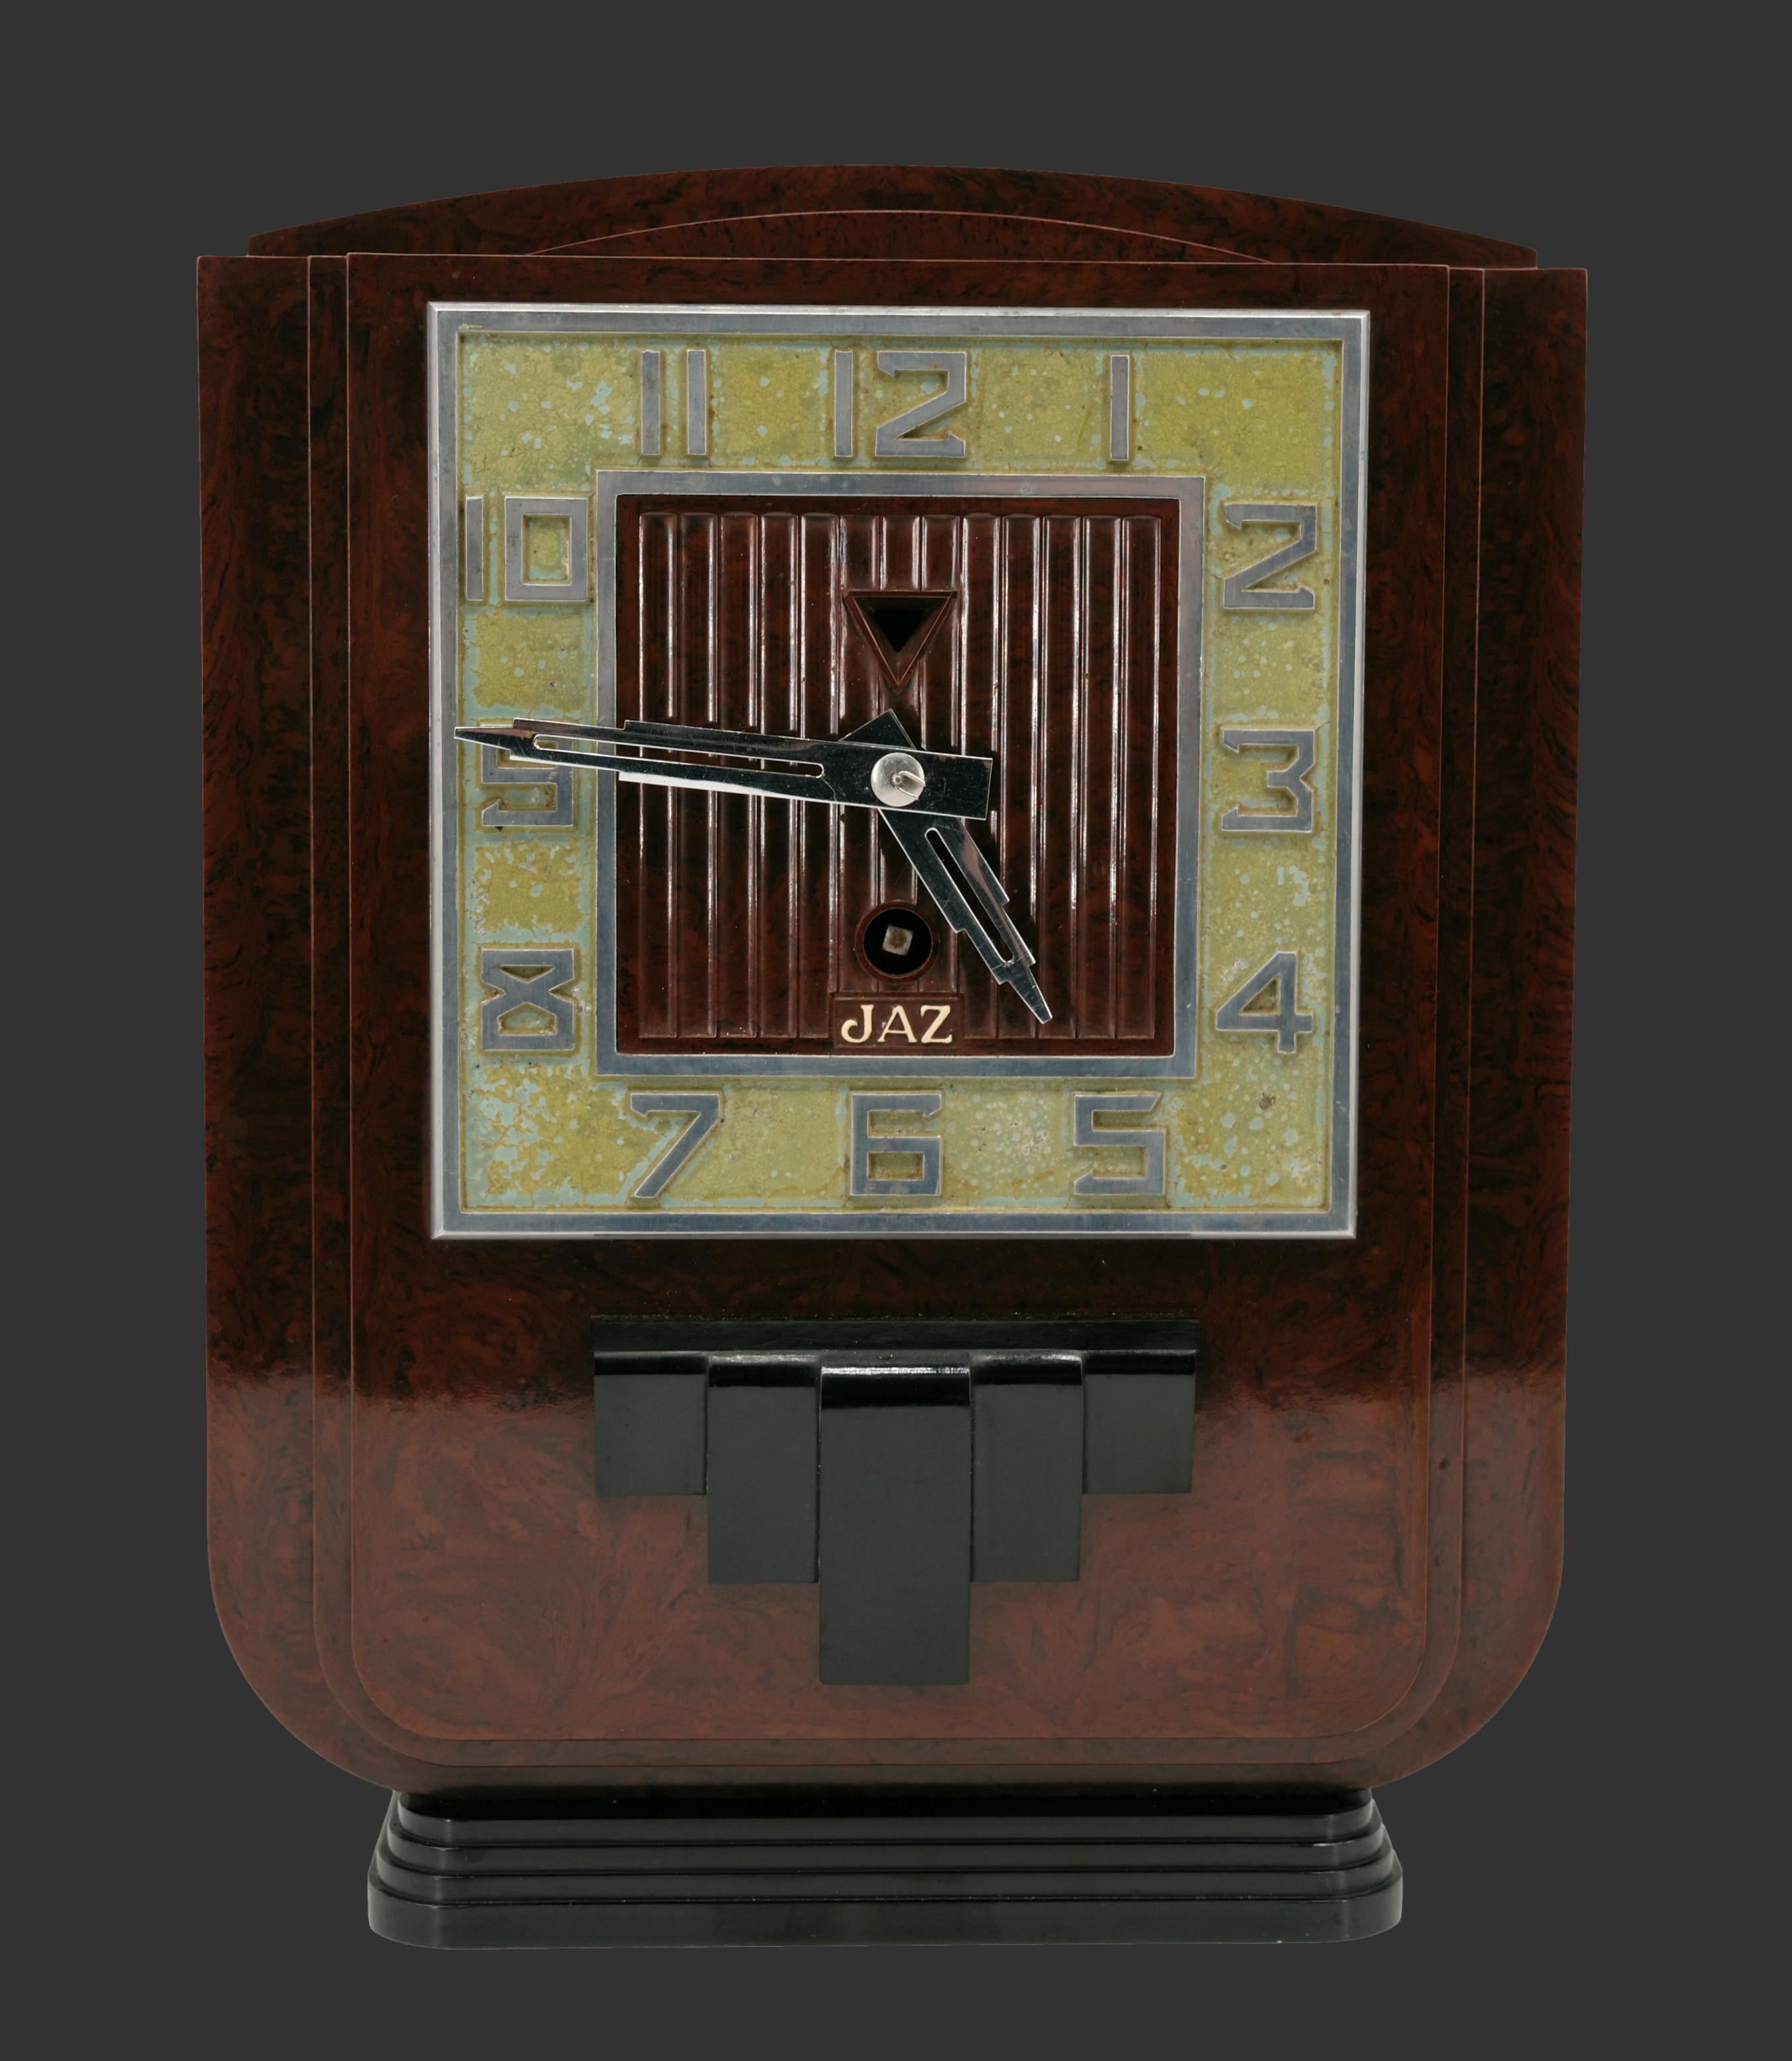 Französische Art Deco Bakelit-Uhr von JAZ, Frankreich, 1934. Höhe: 24,5 cm (9,6